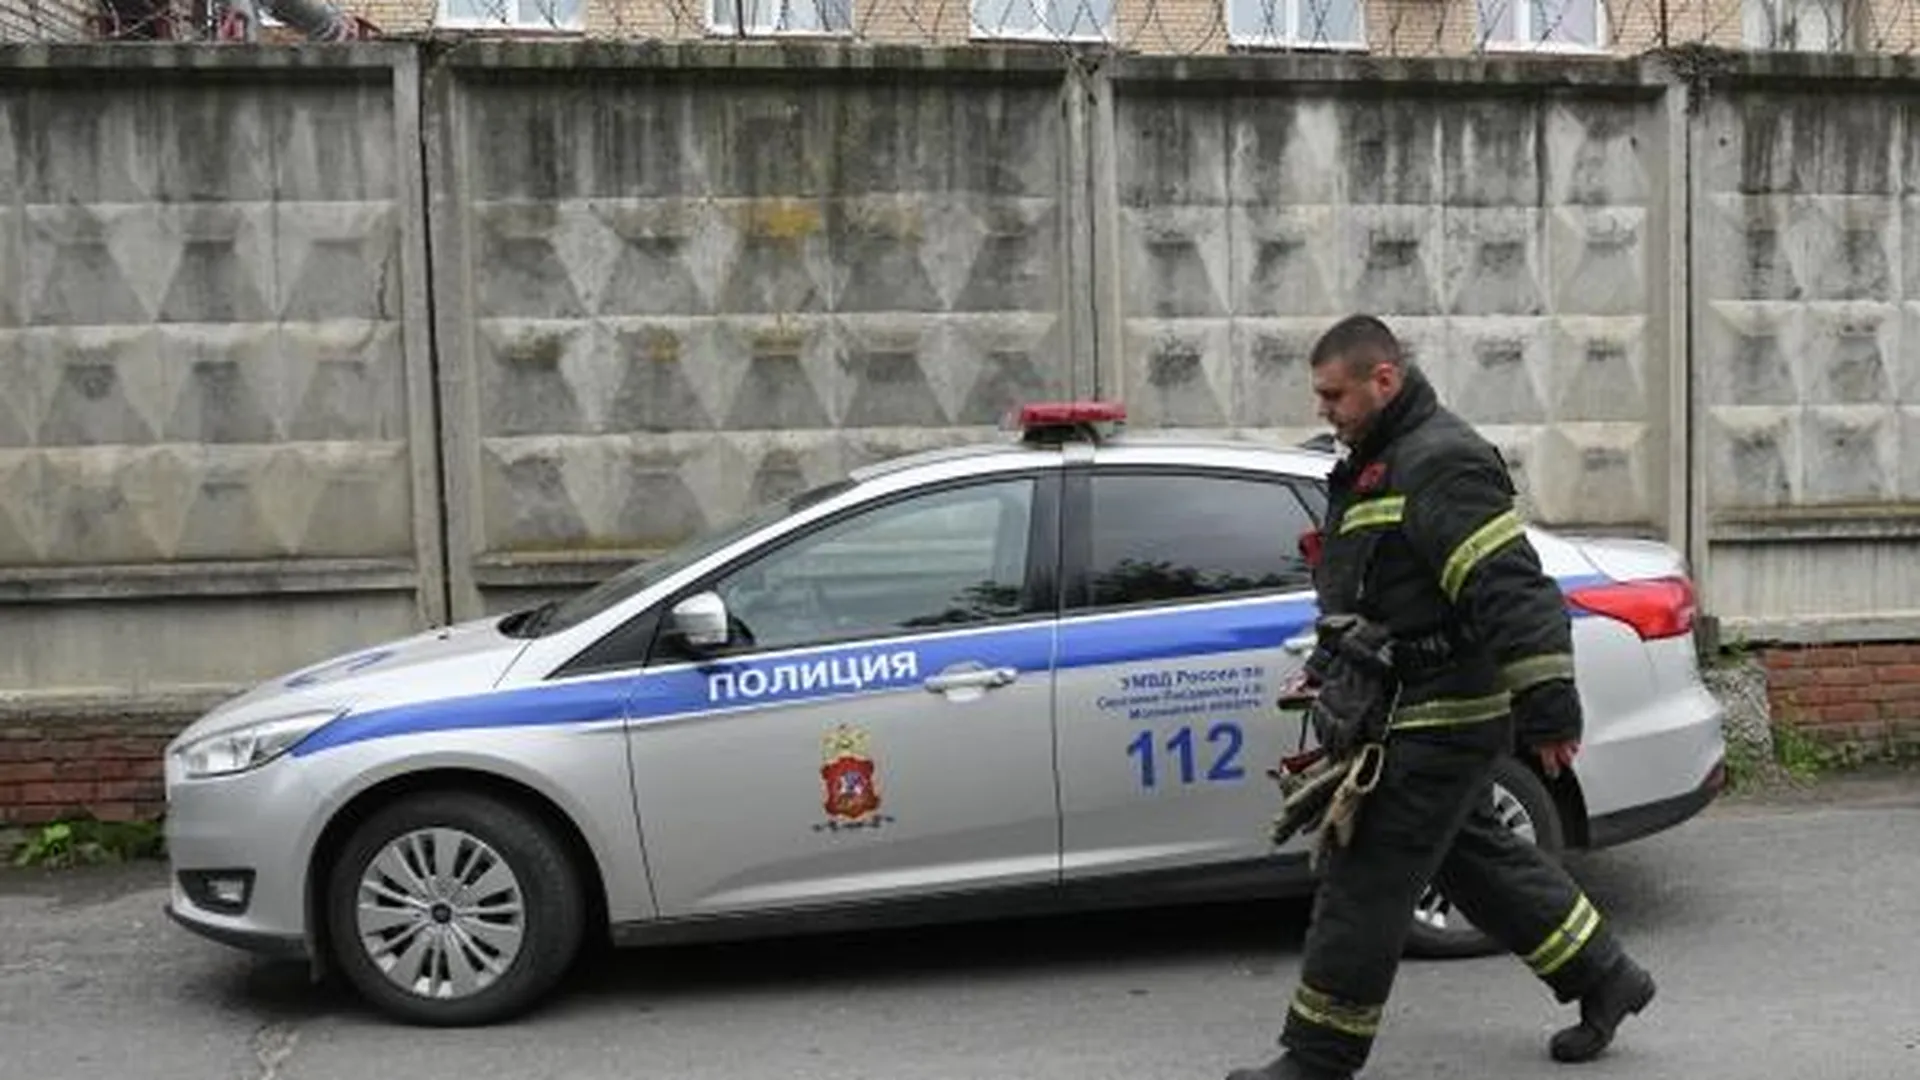 Вопросы по разбитым при взрыве машинам в Сергиевом Посаде будет решать рабочая группа